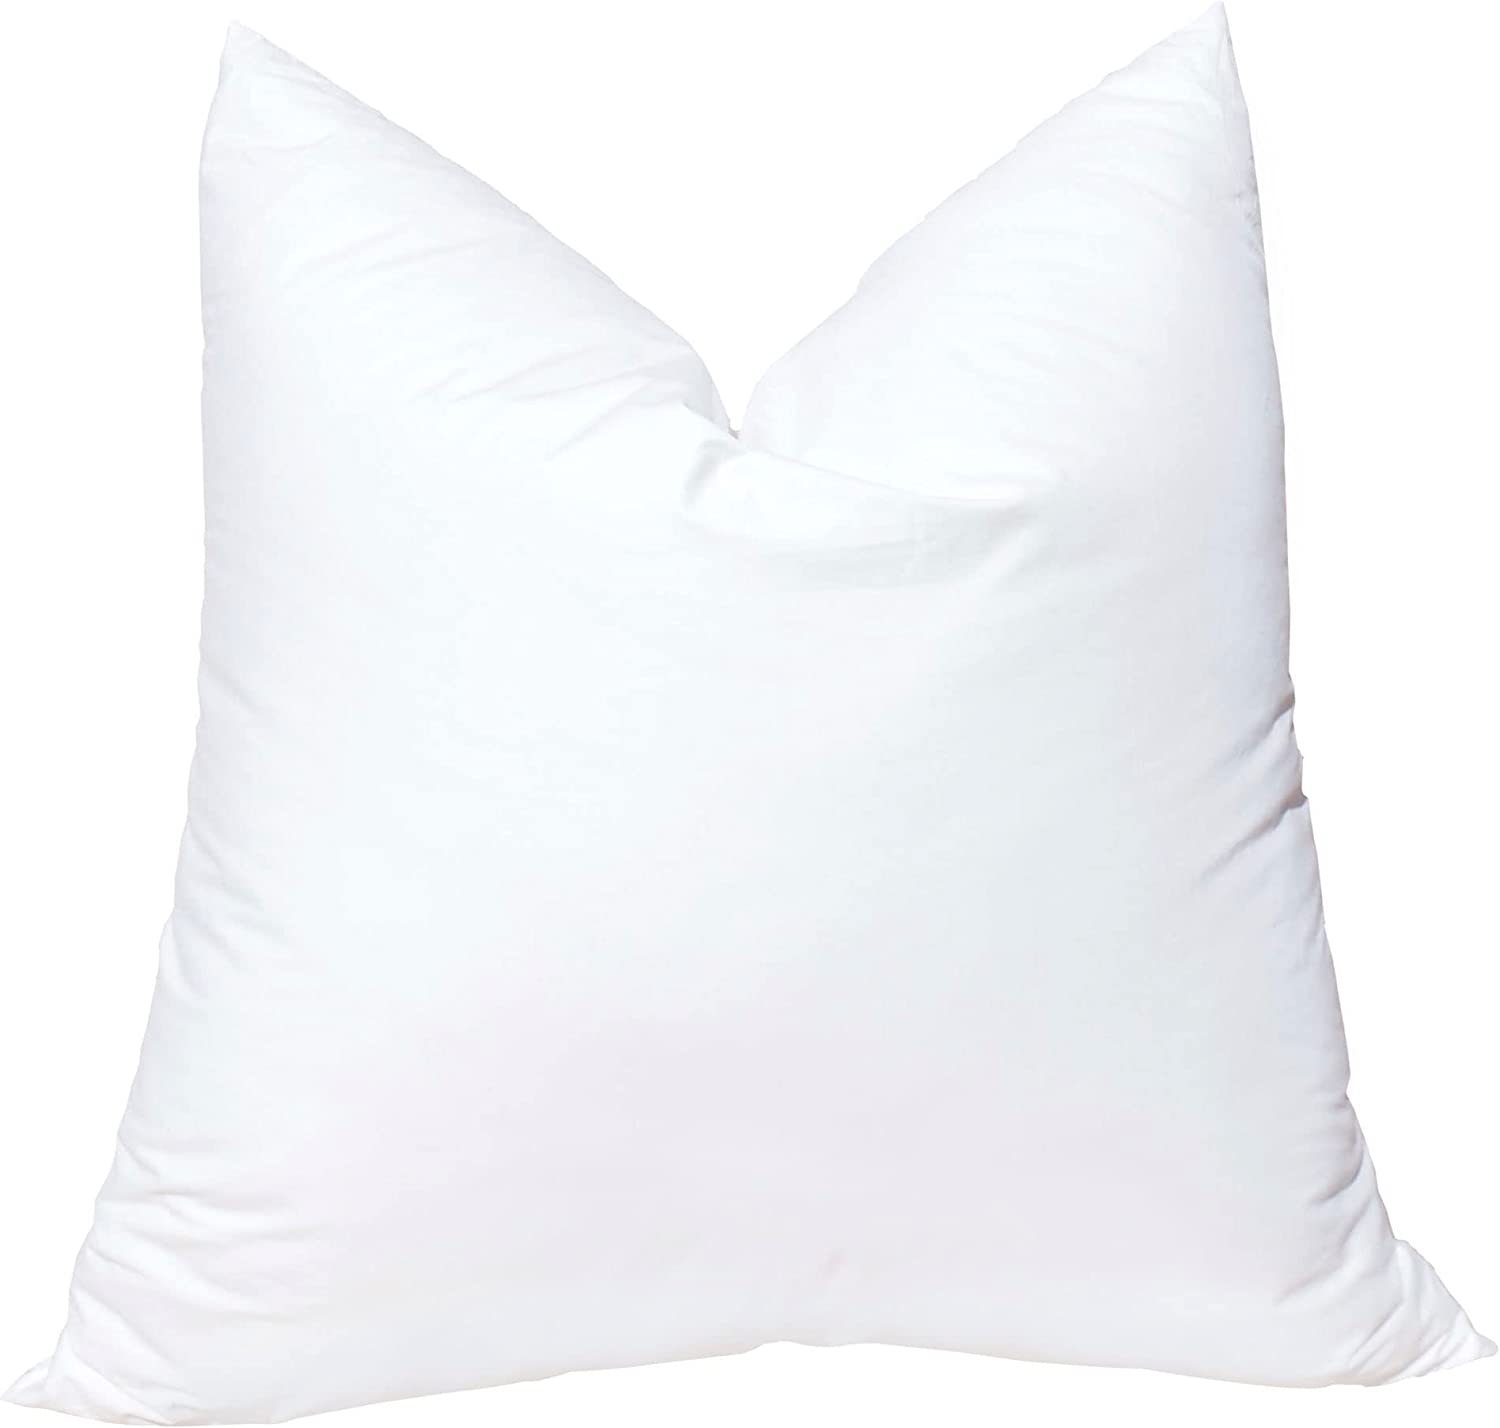 Pillowflex Ultra Soft Allergy-Free Pillow Insert